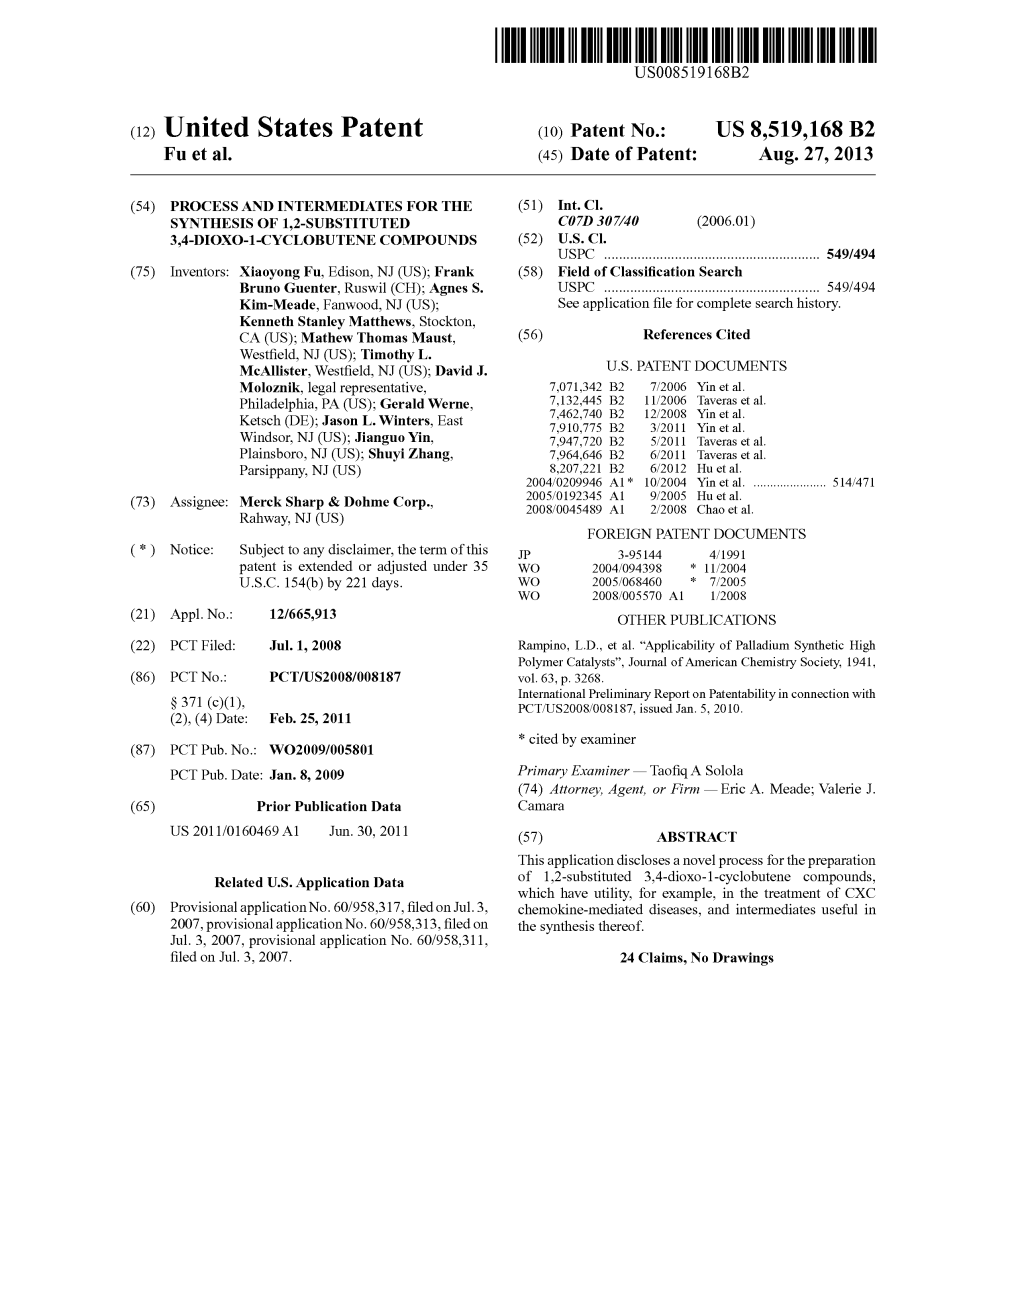 (12) United States Patent (10) Patent No.: US 8,519,168 B2 Fu Et Al